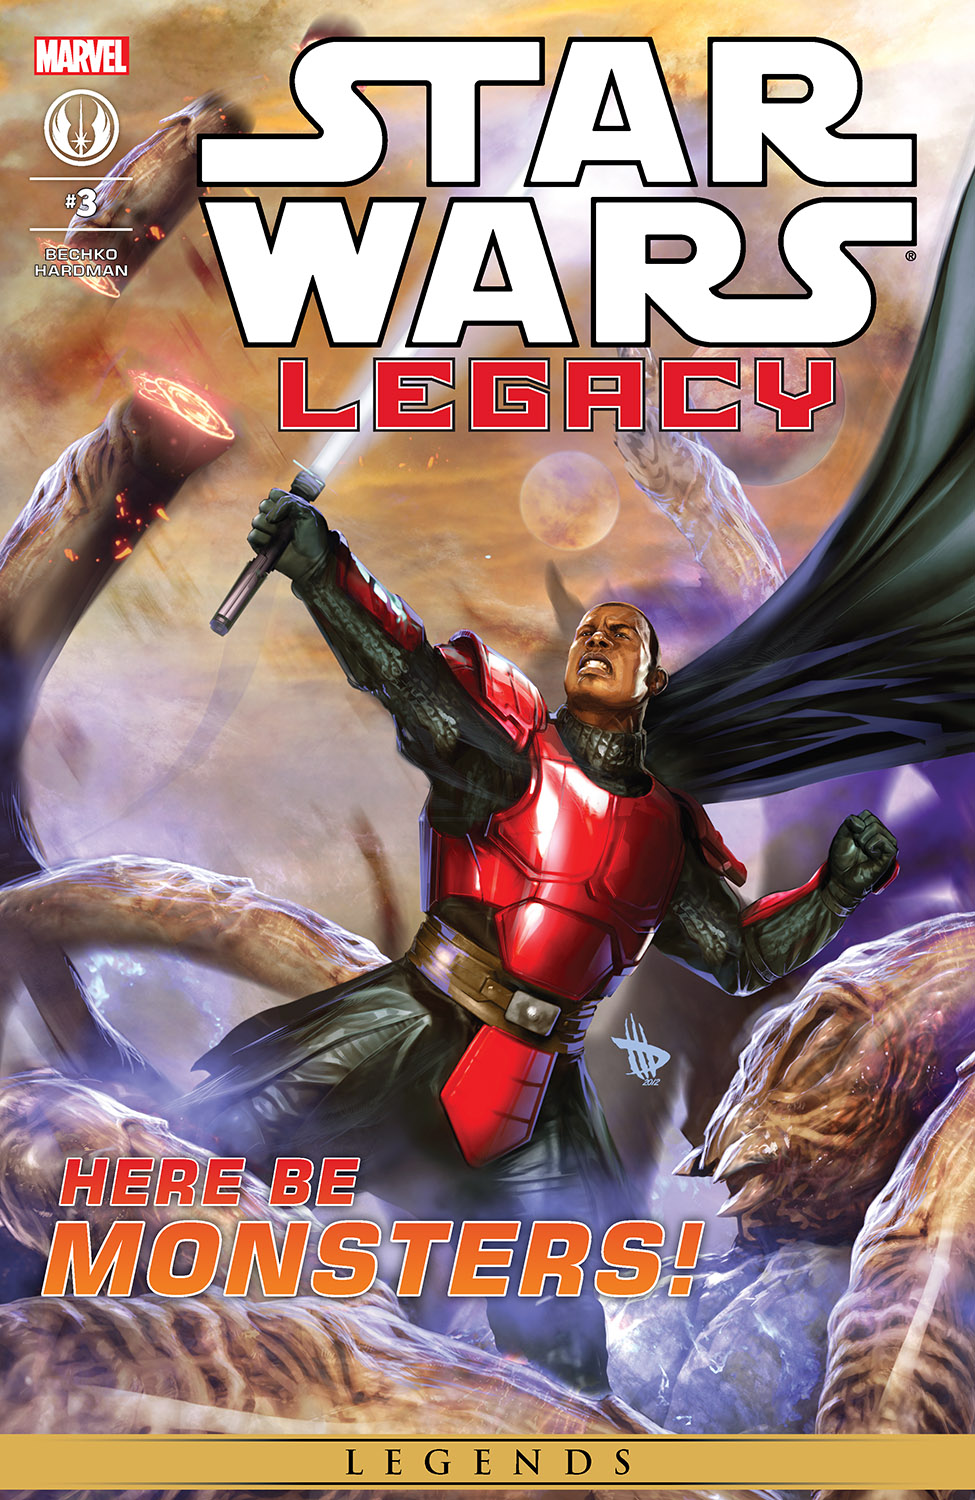 Star Wars: Legacy (2013) #3